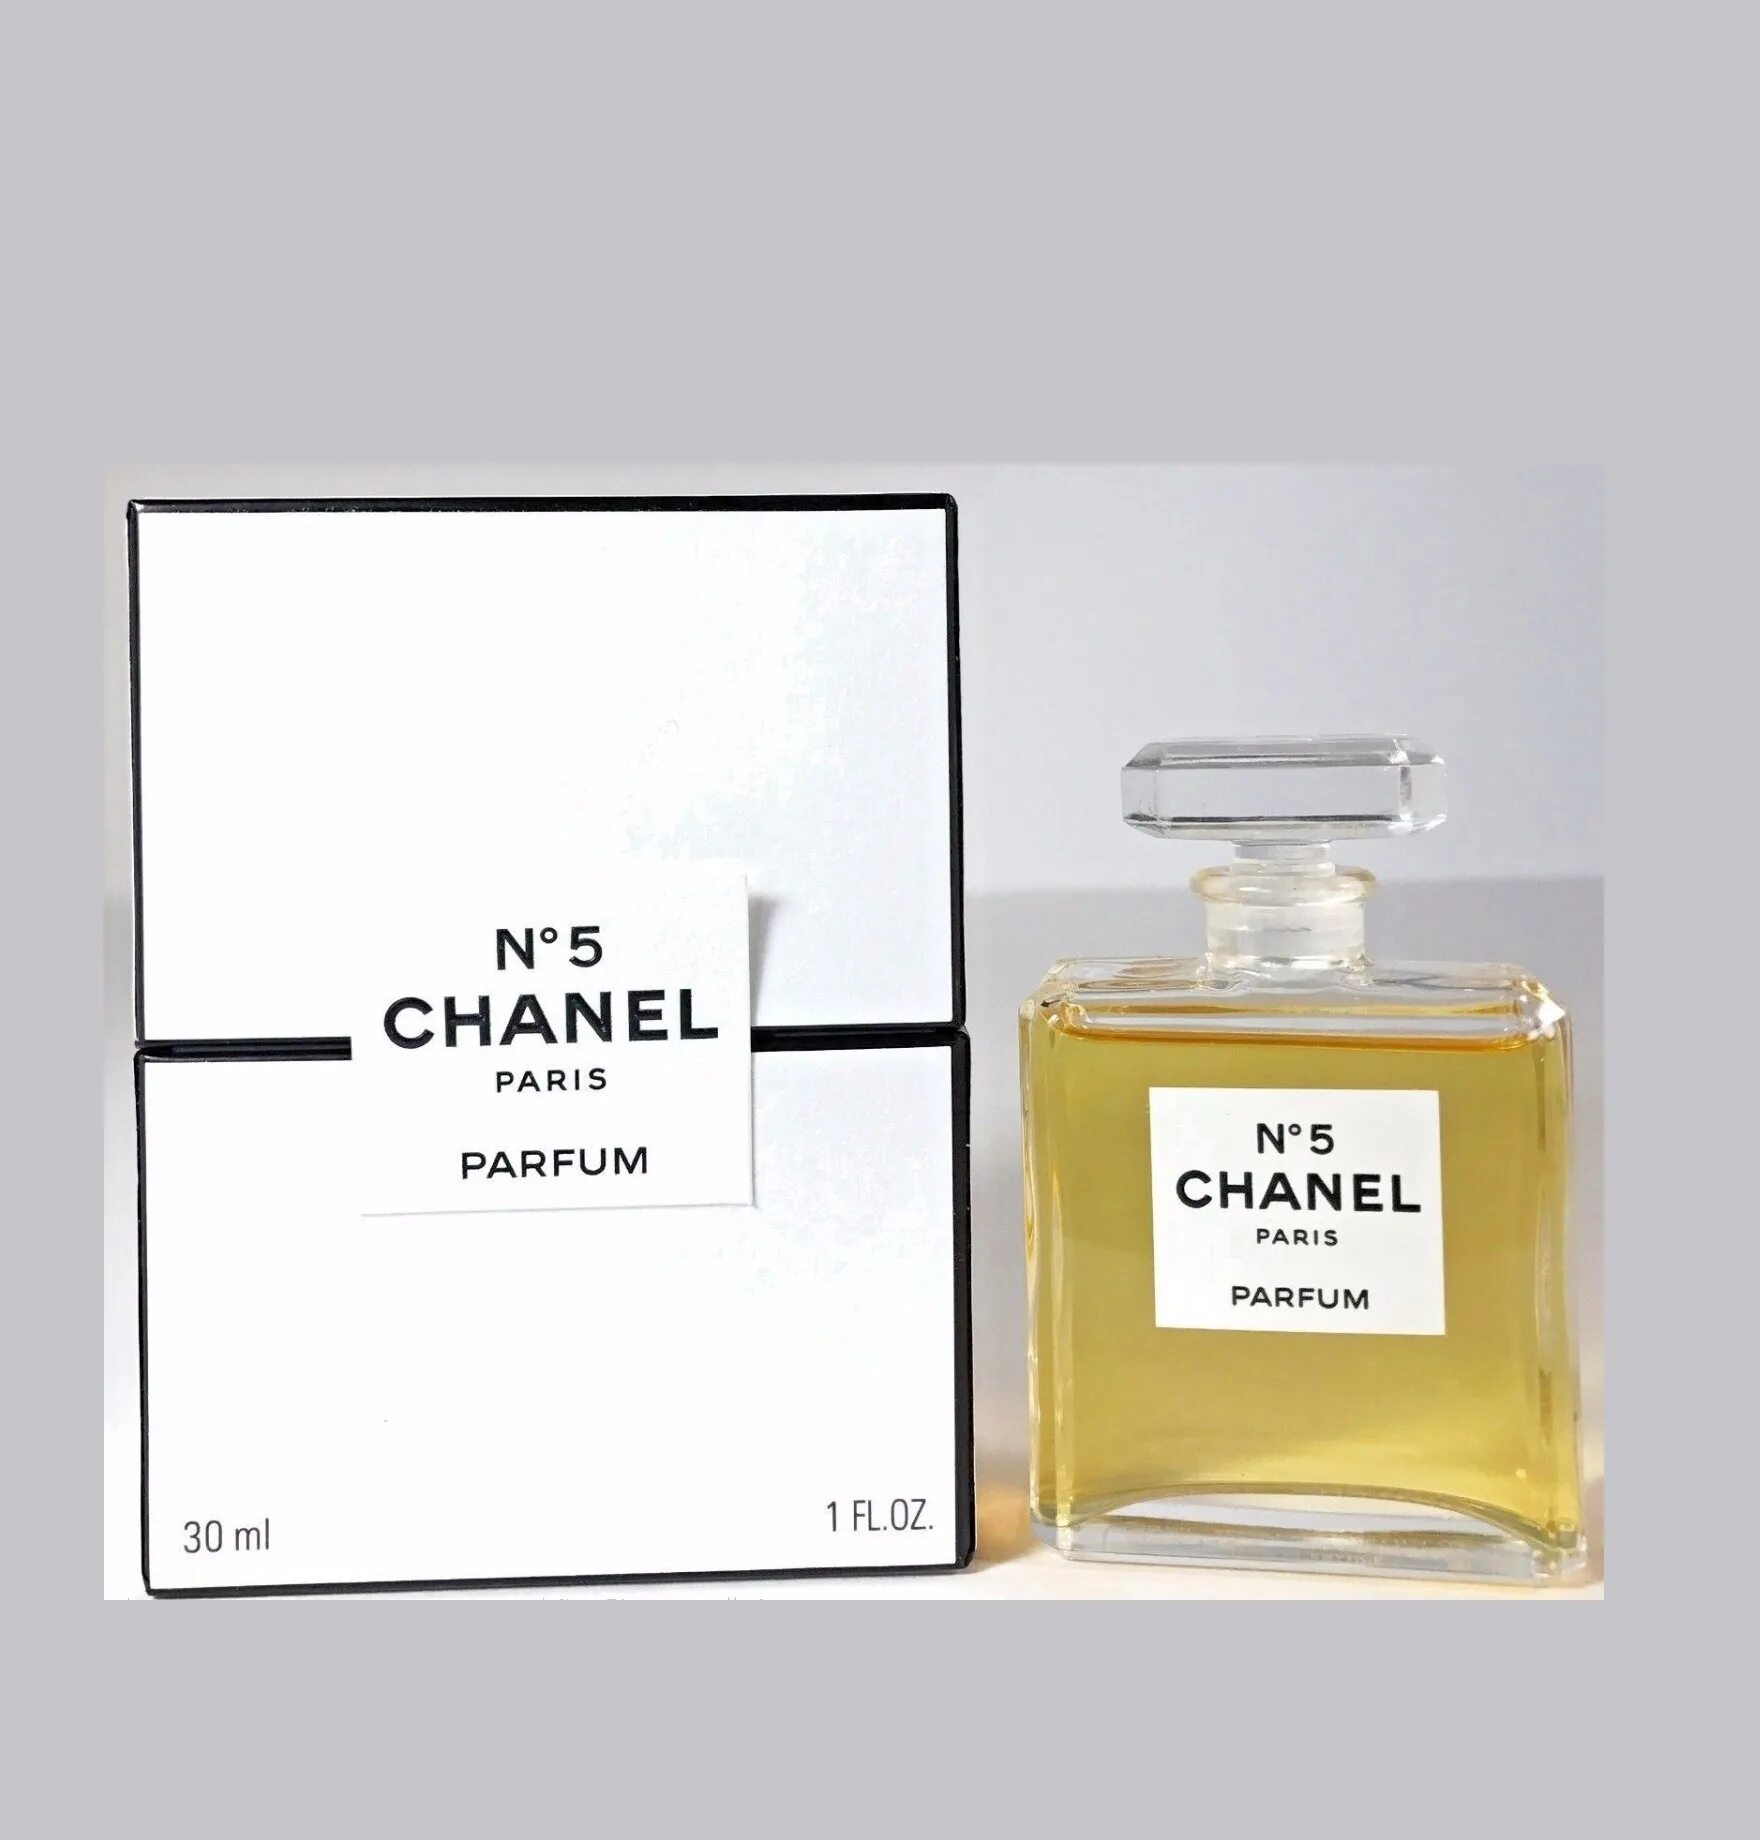 Шанель номер 5 духи женские. N°5 Chanel туалетная вода. Духи Шанель 5 Париж.